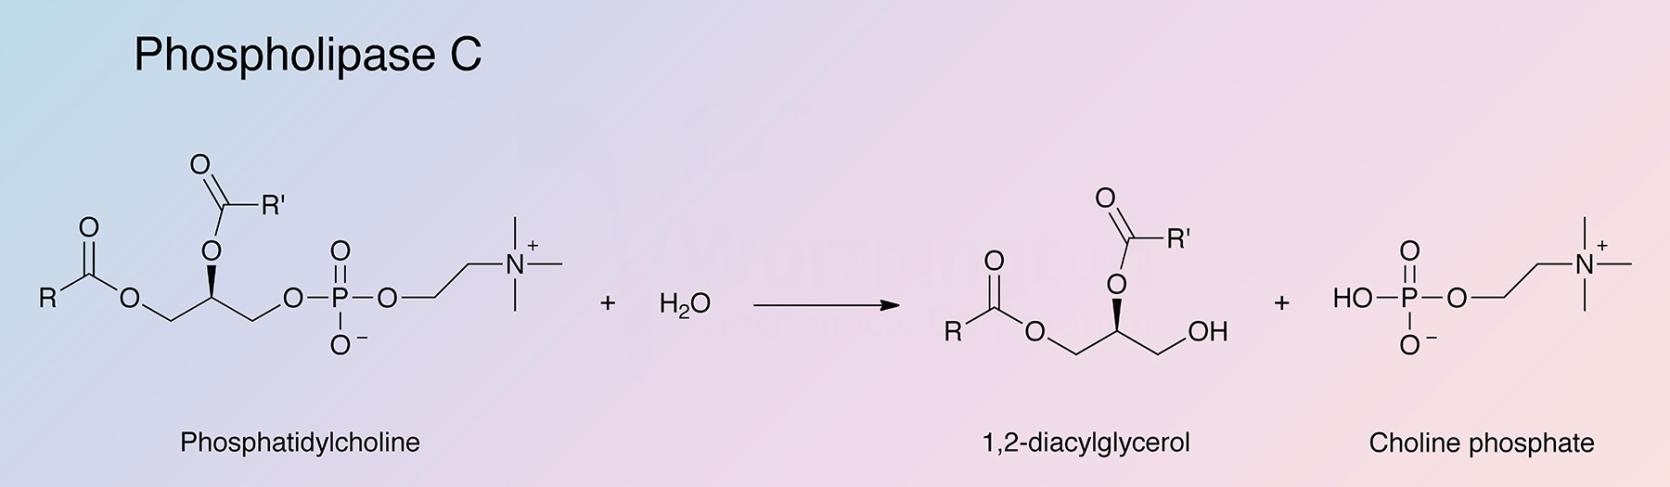 Phospholipase C Enzymatic Reaction